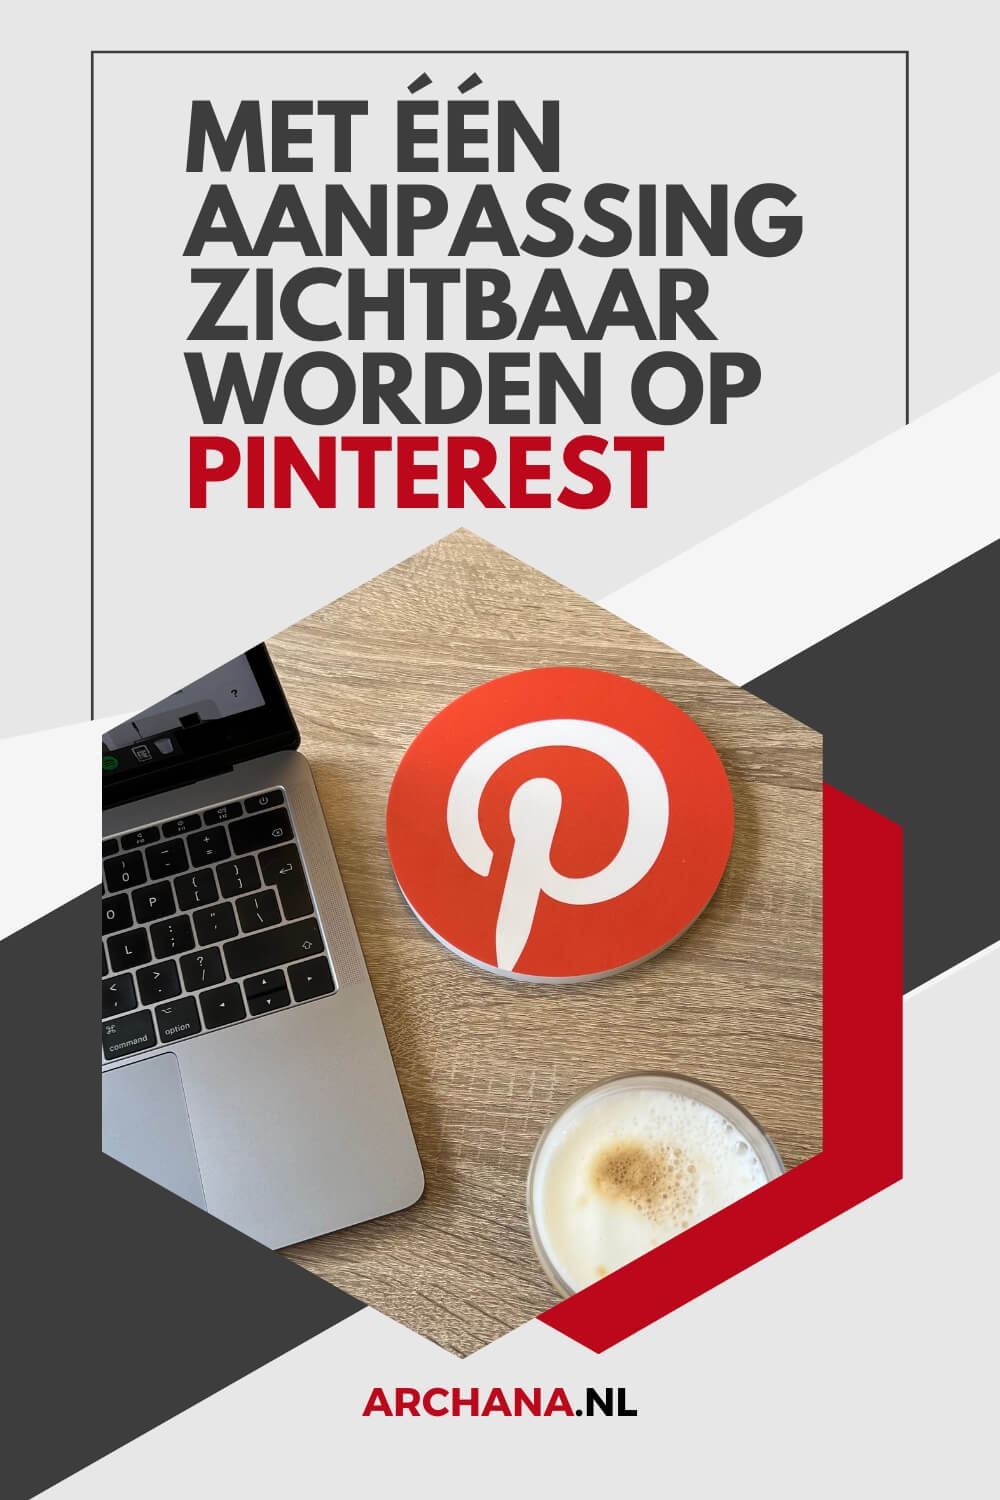 Met één aanpassing zichtbaar worden op Pinterest - Pinterest tips voor bedrijven - ARCHANA.NL